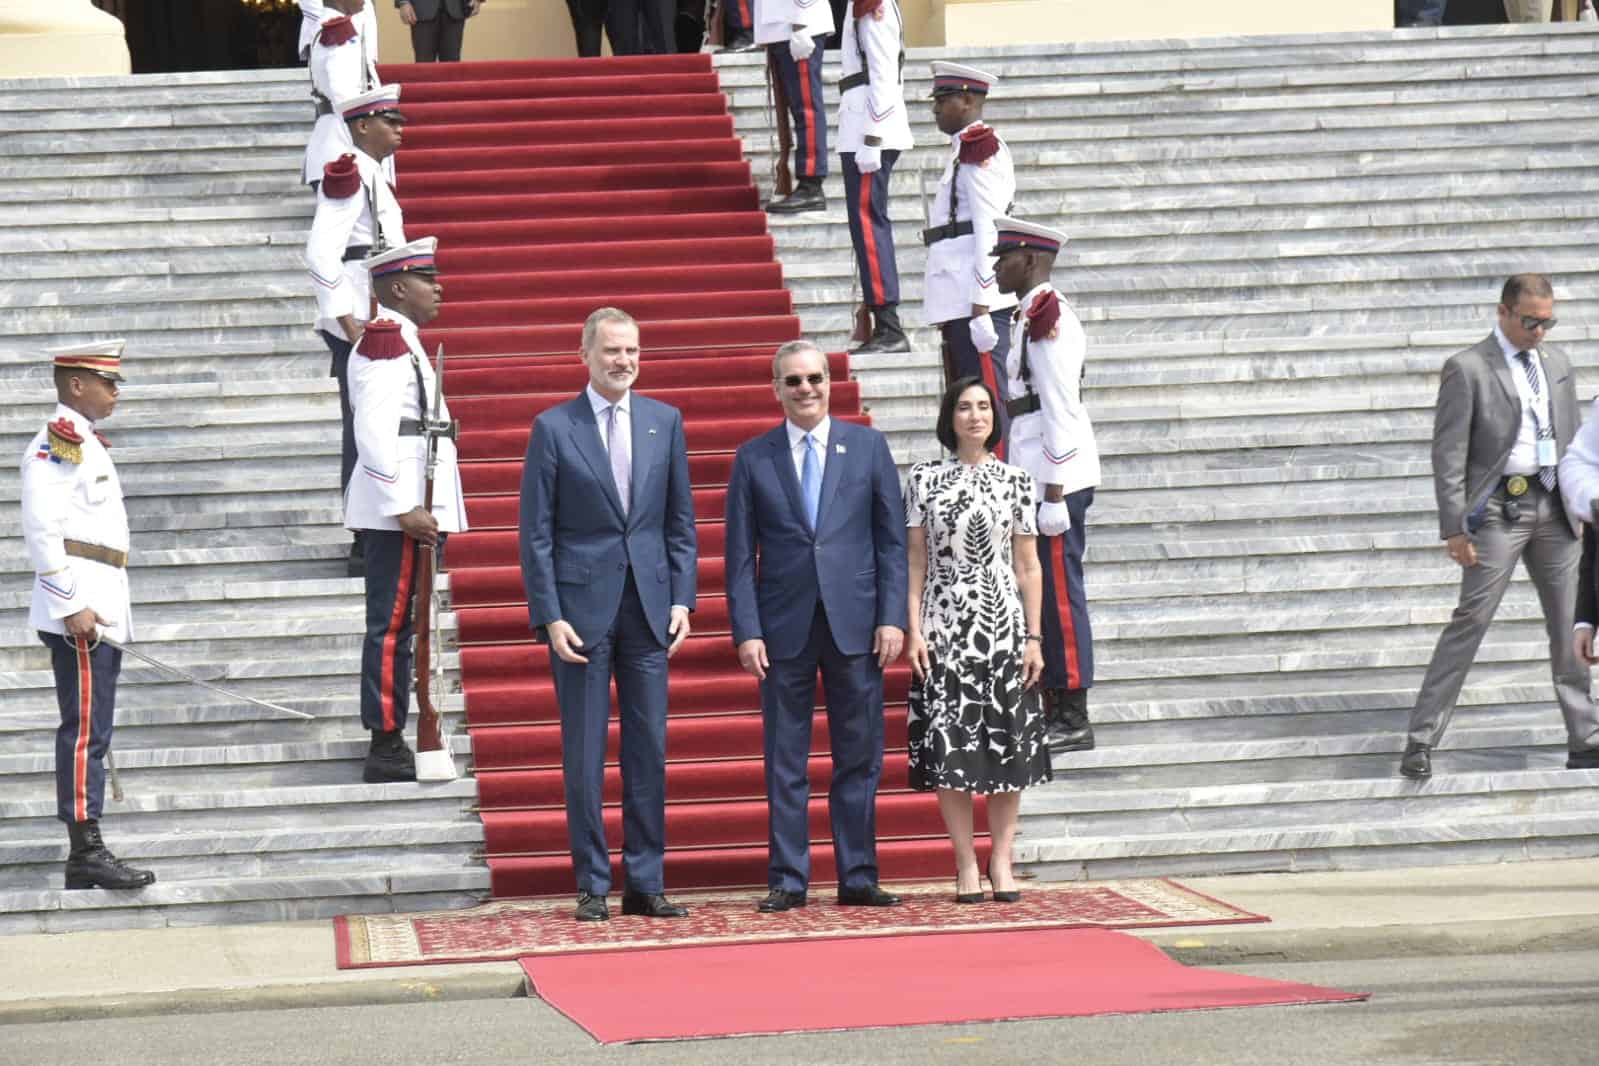 Rey Felipe VI llega al Palacio Nacional en visita a Luis Abinader – El Profe Show